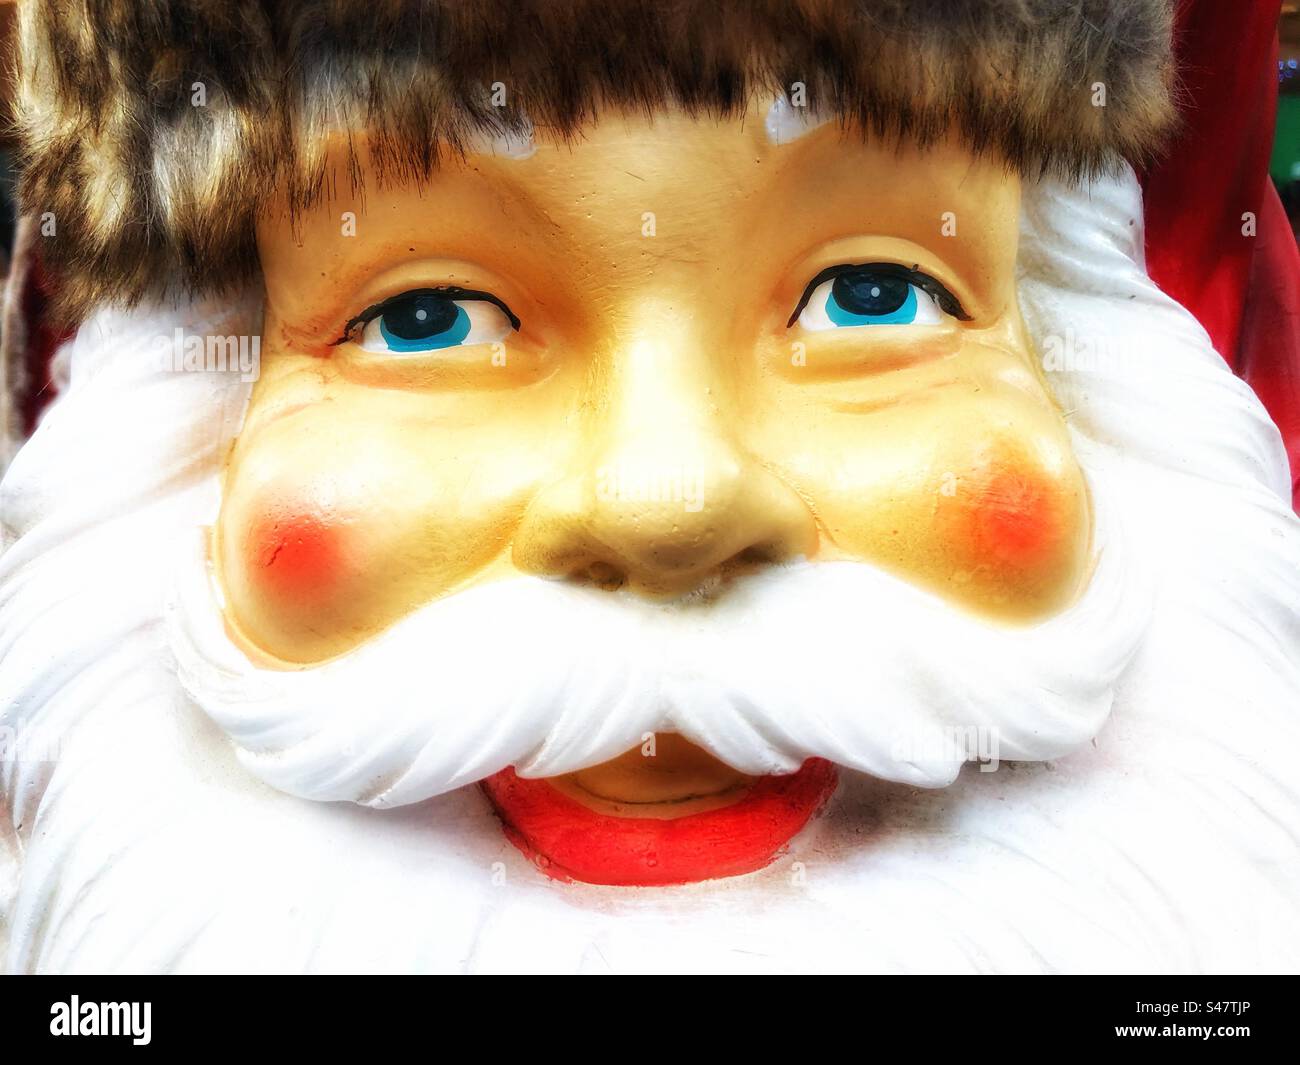 Nahaufnahme Porträt von Gesicht und weißem Bart, wenn der Weihnachtsmann mit einem glücklichen Lächeln und rosa roten Wangen ist Stockfoto